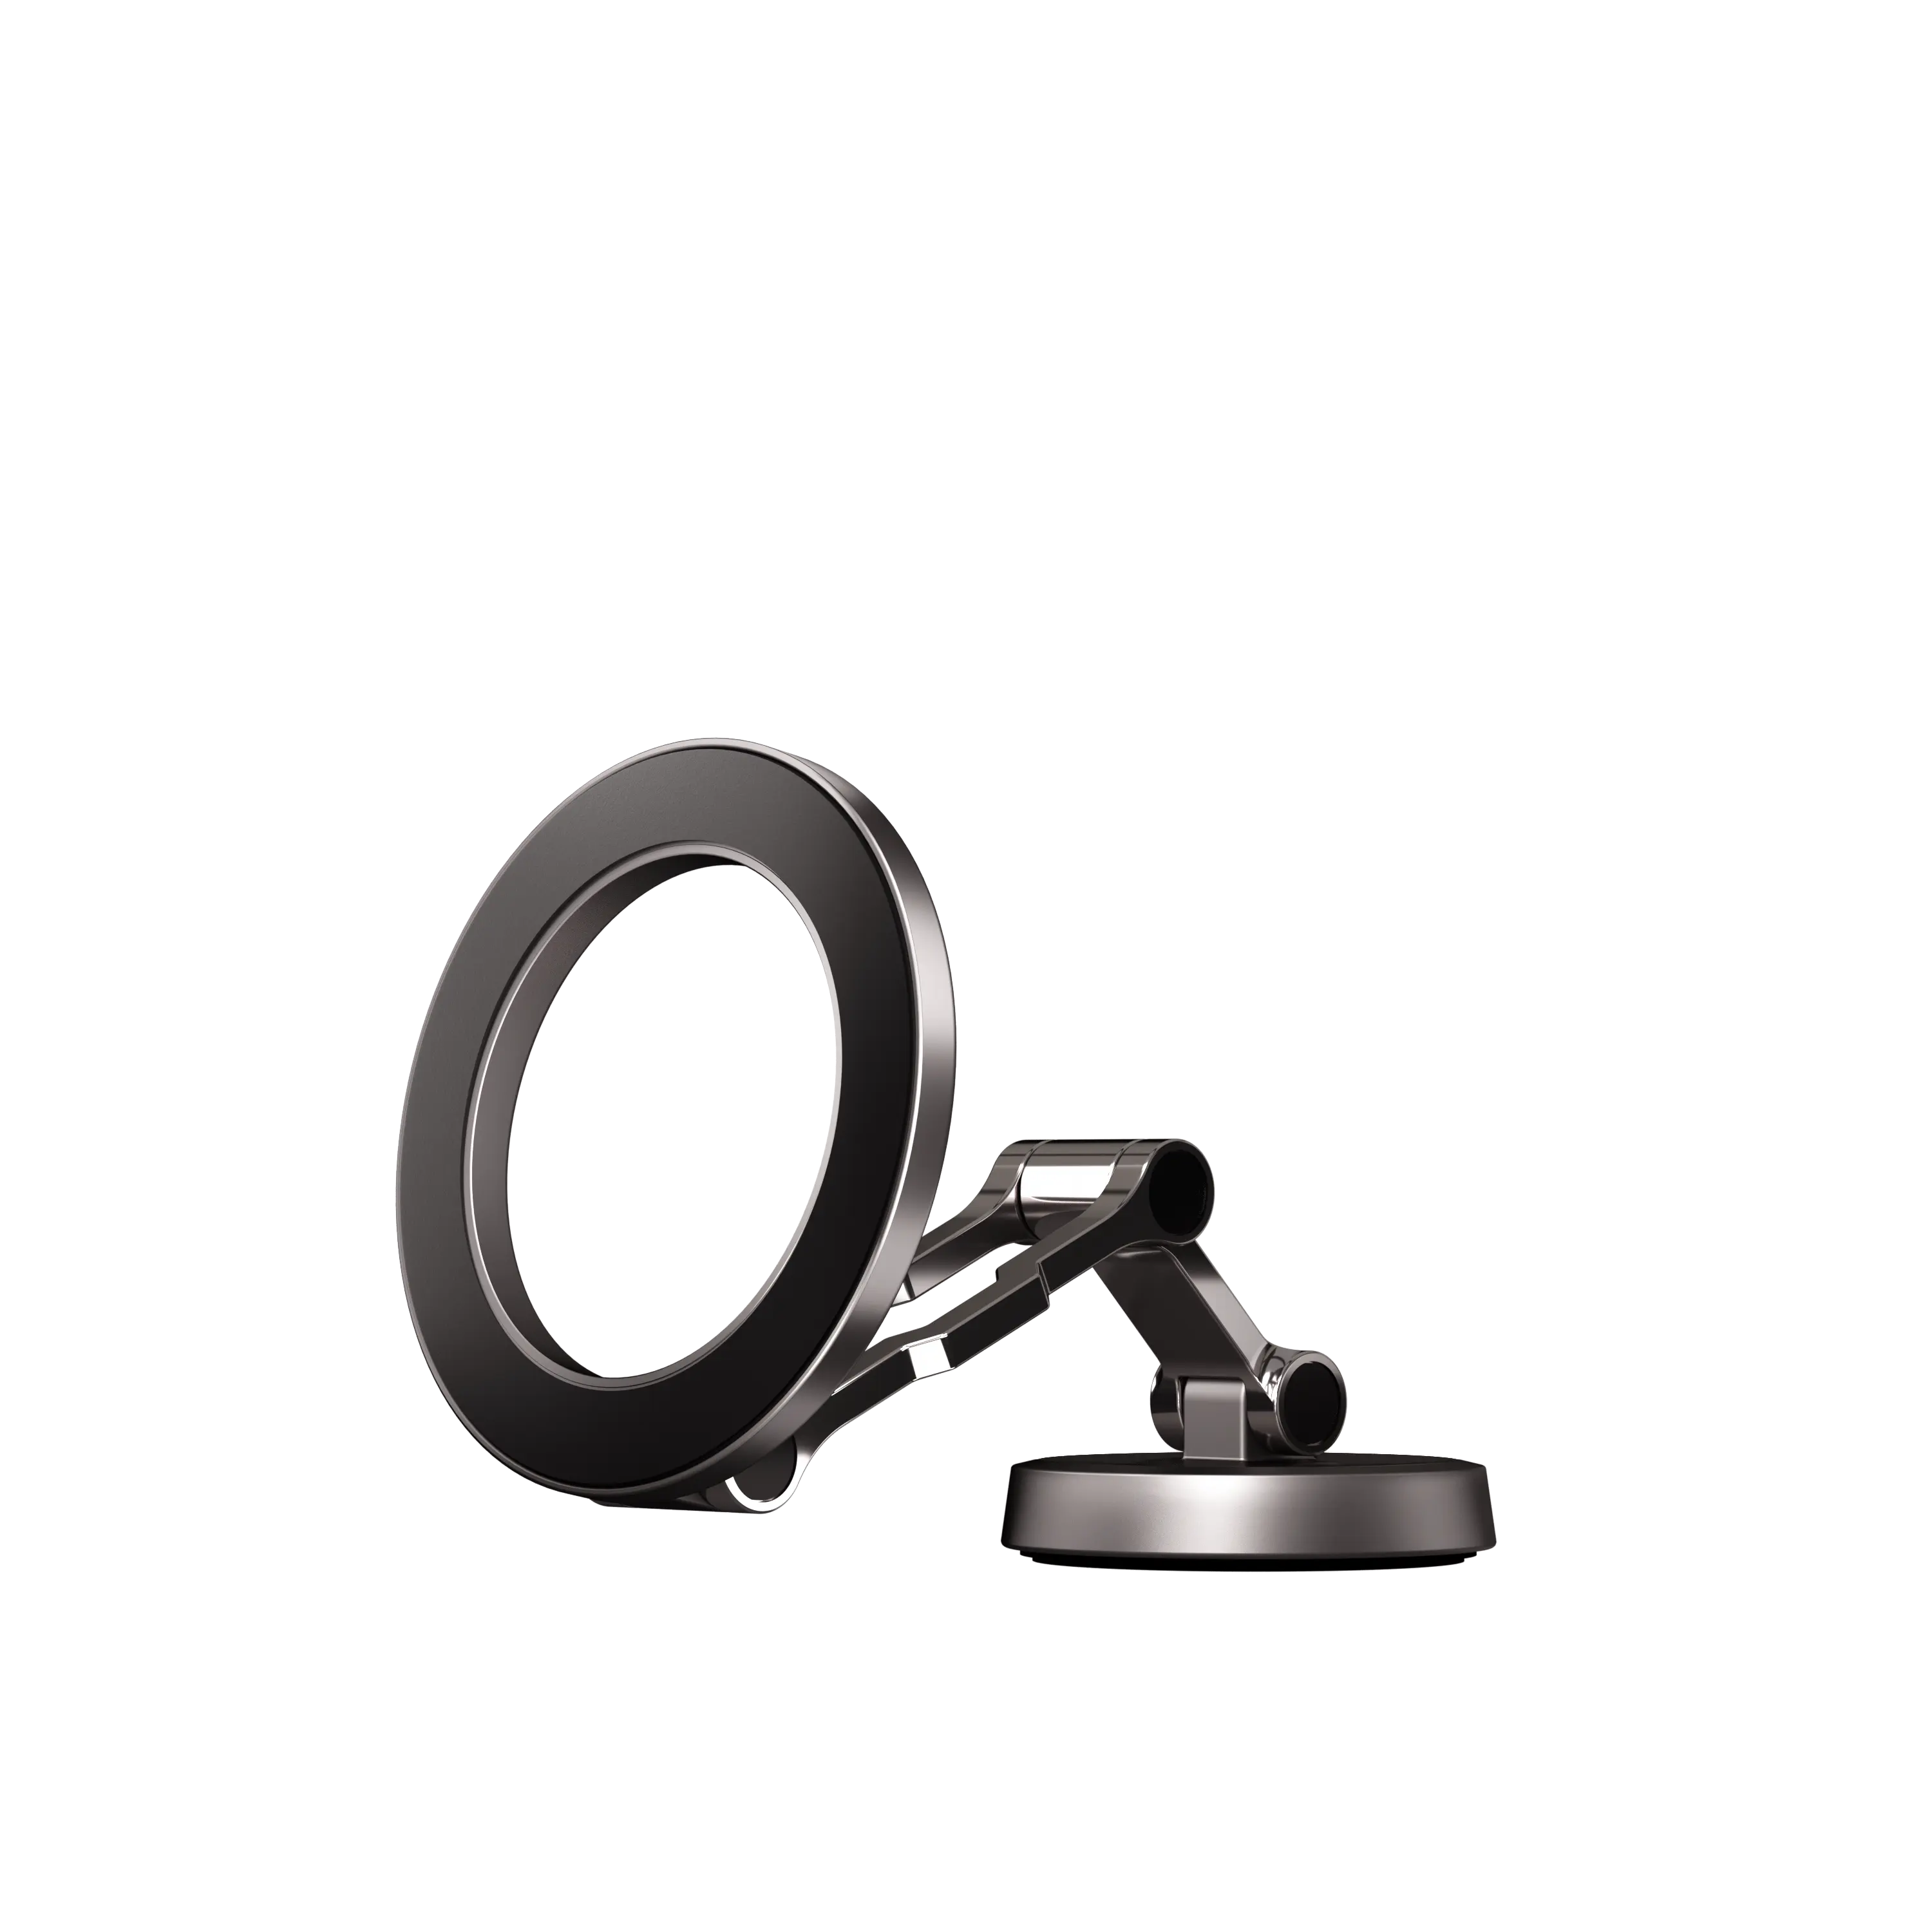 Neues Design benutzerdefiniertes Logo 360-Grad-Rotation magnetische Telefonhalterung Auto-Armaturenbrett doppelmagnete Auto-Telefongehalterung schwarz Guangdong